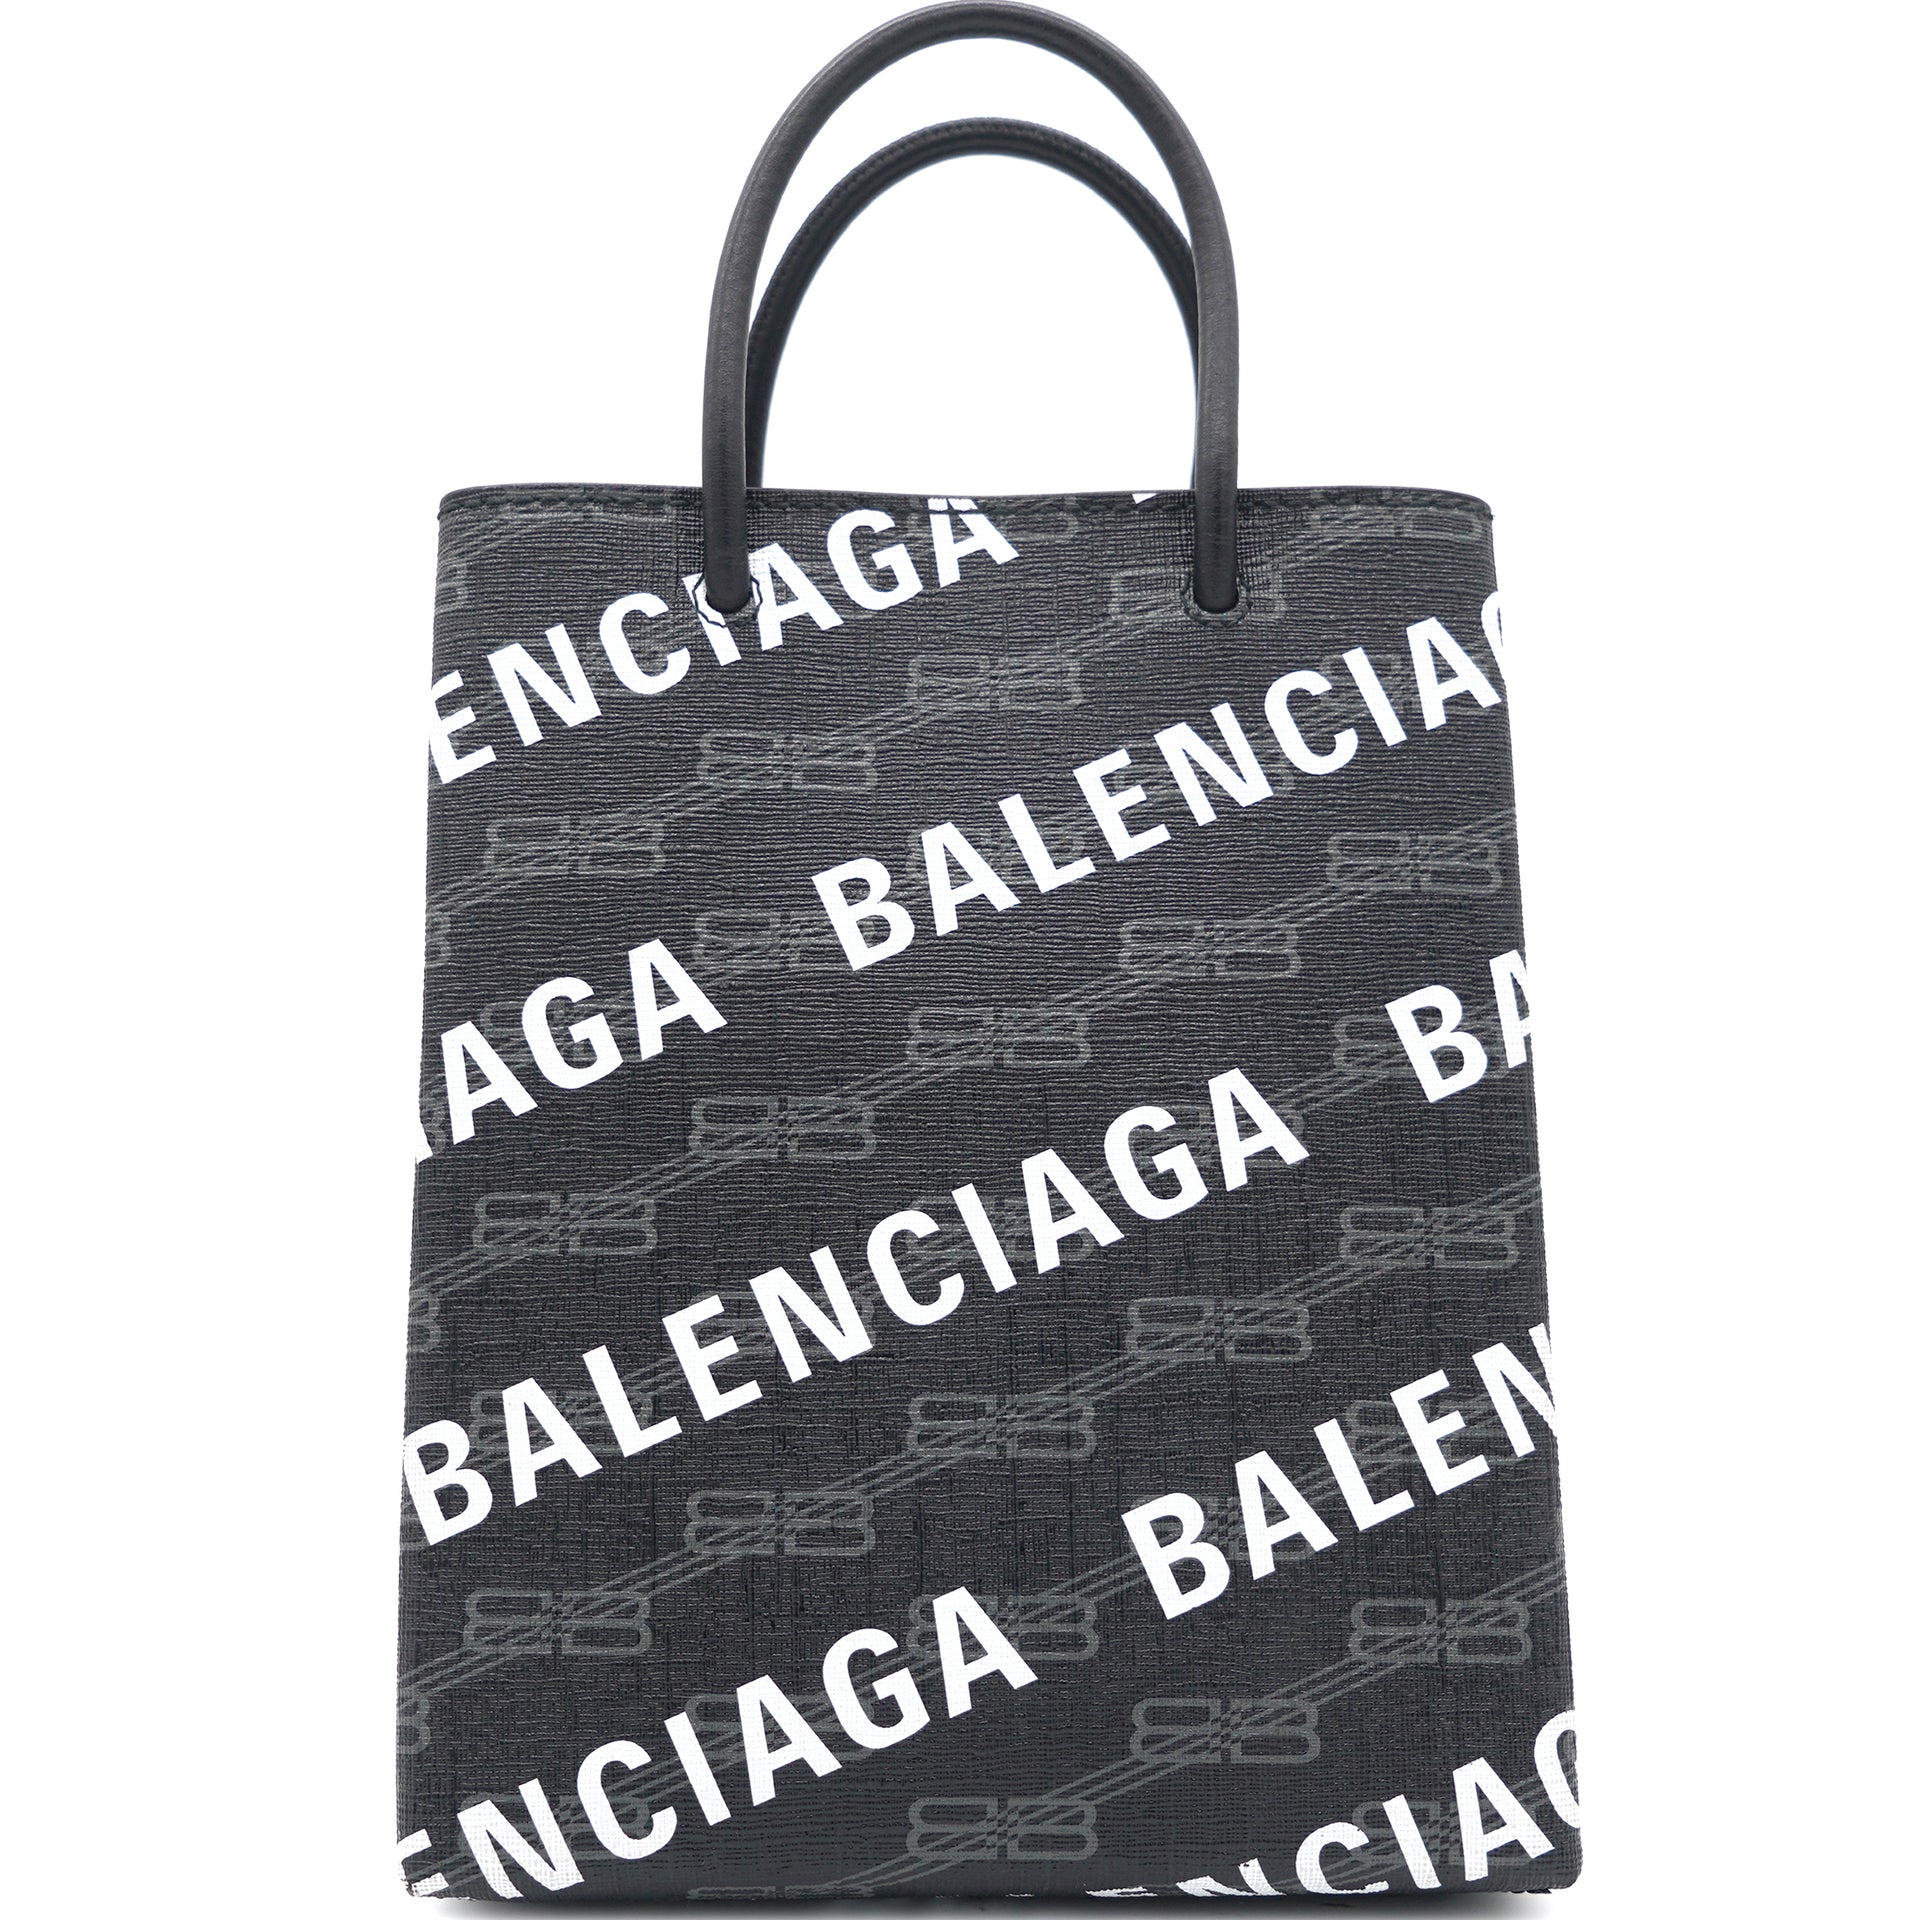 Women's Handbags | Balenciaga US